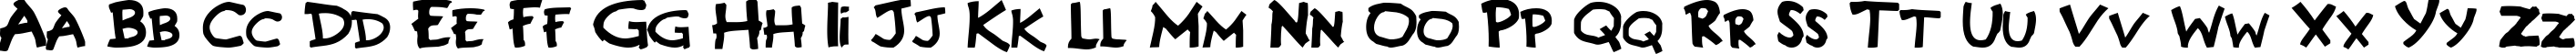 Пример написания английского алфавита шрифтом Gremlins